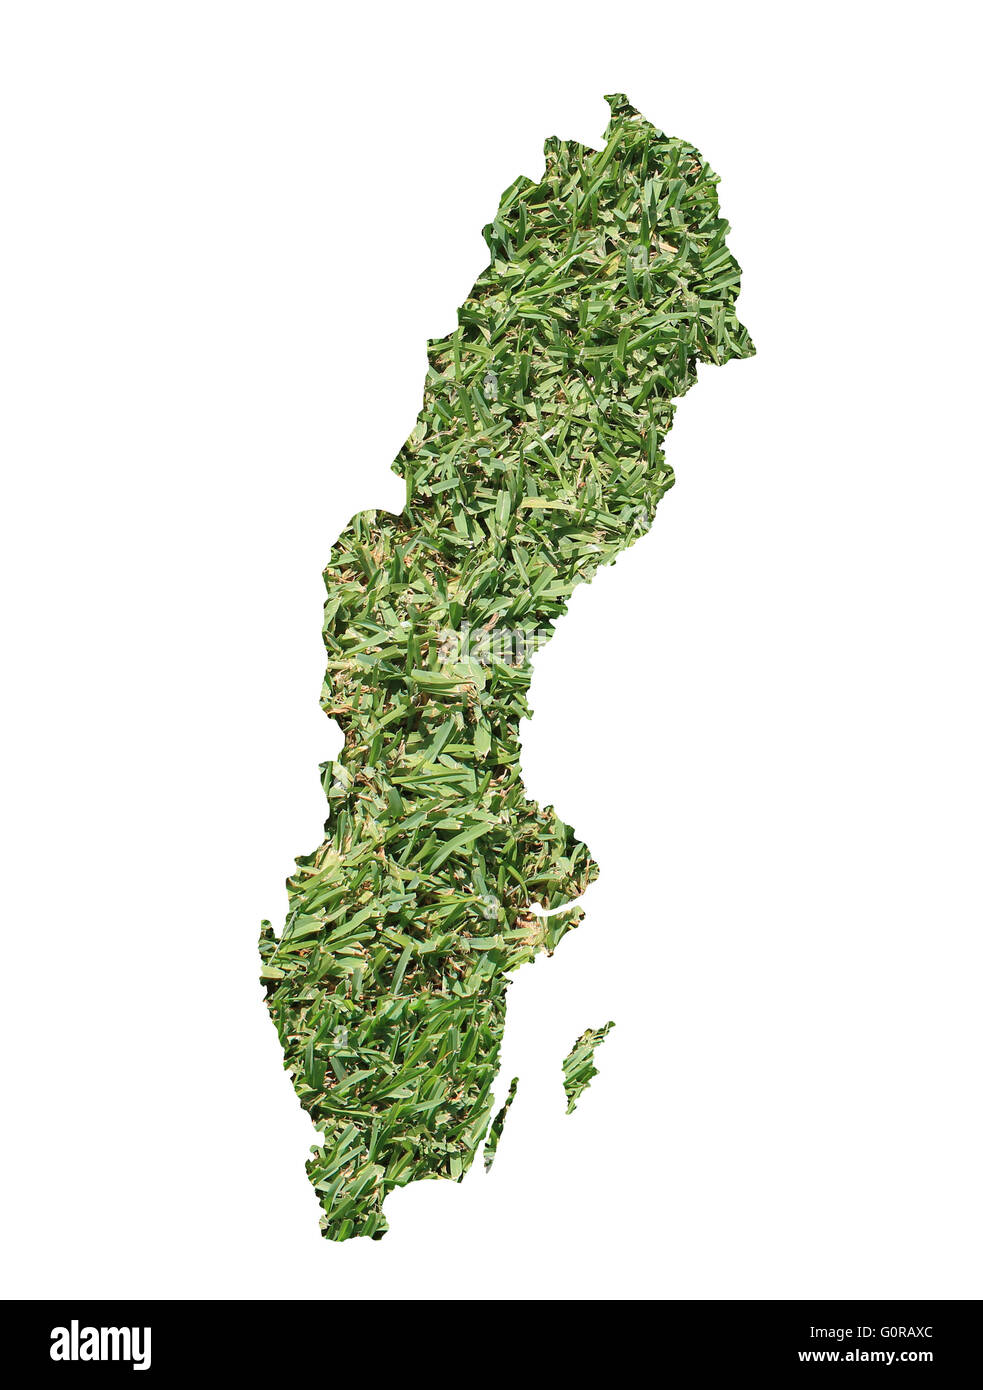 Mappa di Svezia riempito con erba verde, ambientale e concetto ecologico. Foto Stock